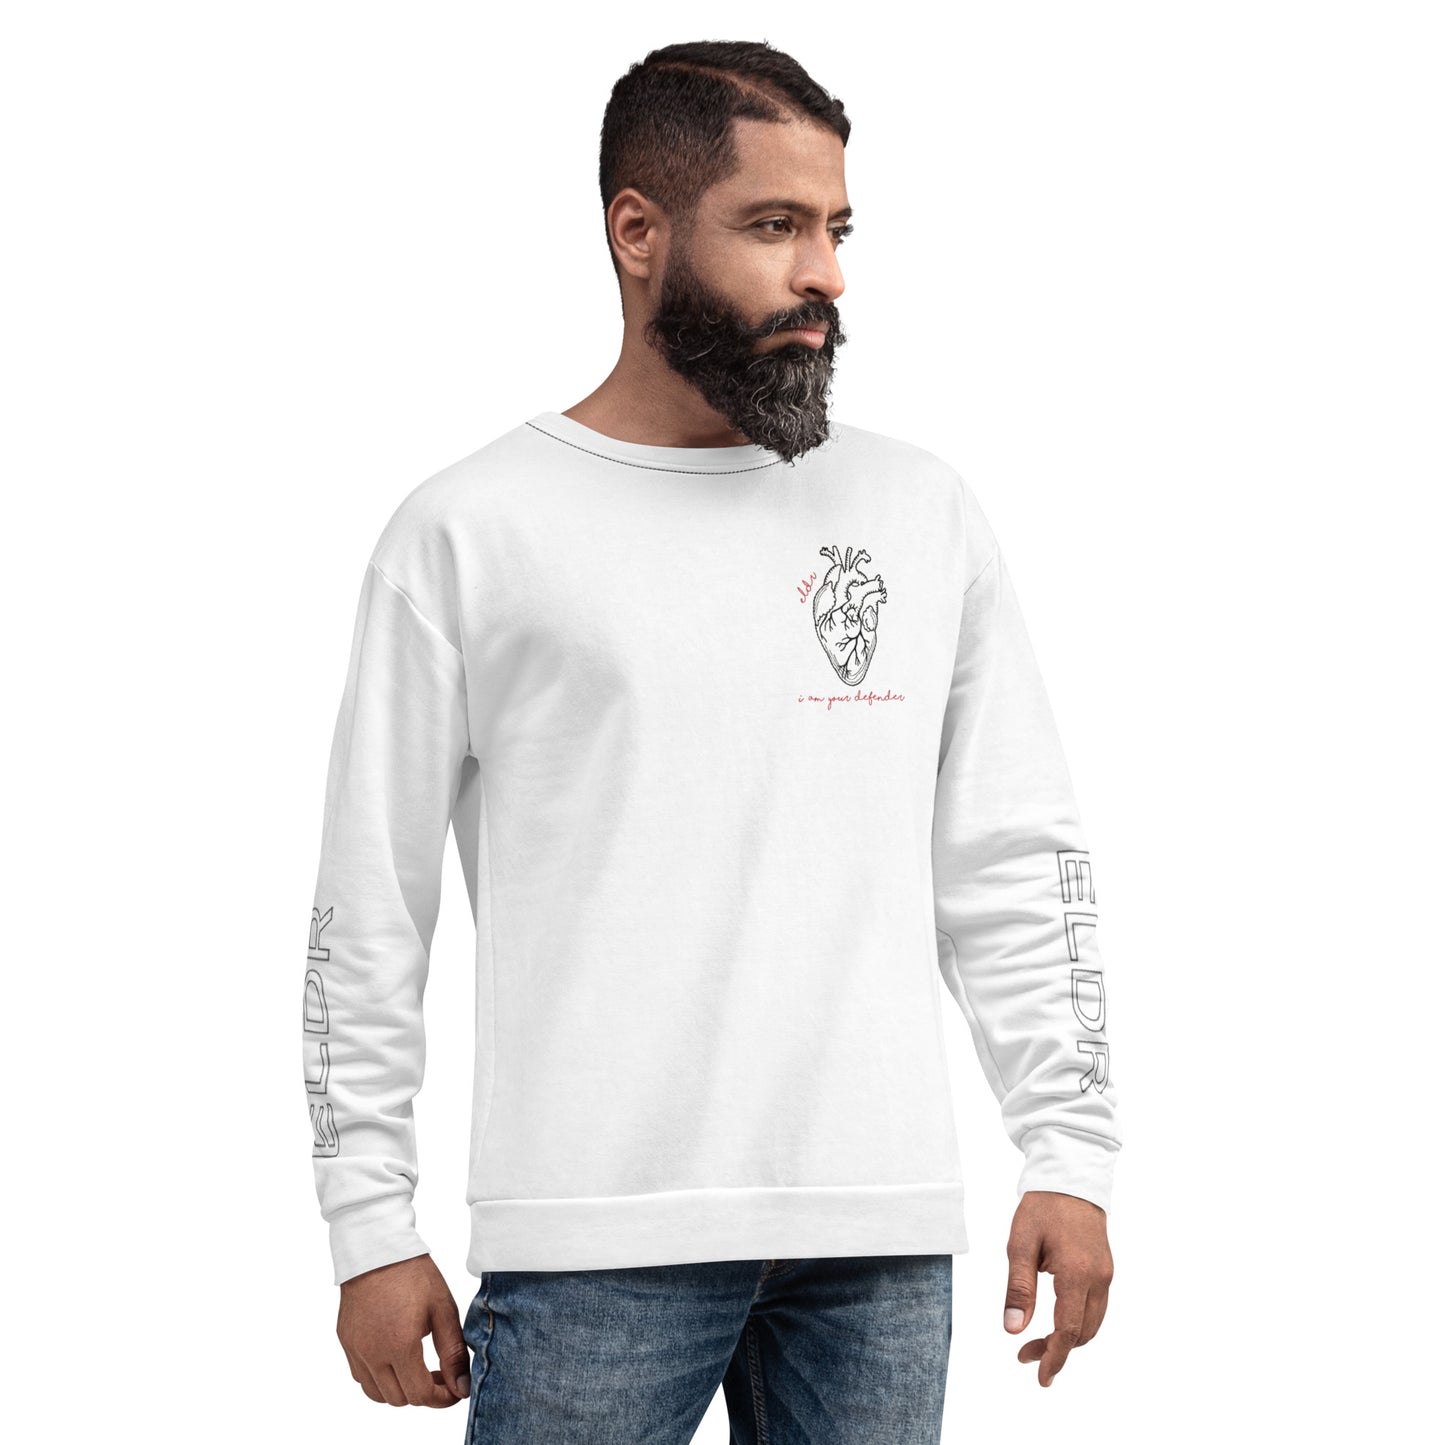 ELDR 'Defender' Unisex Sweatshirt- Heart Anatomy and Sleeves